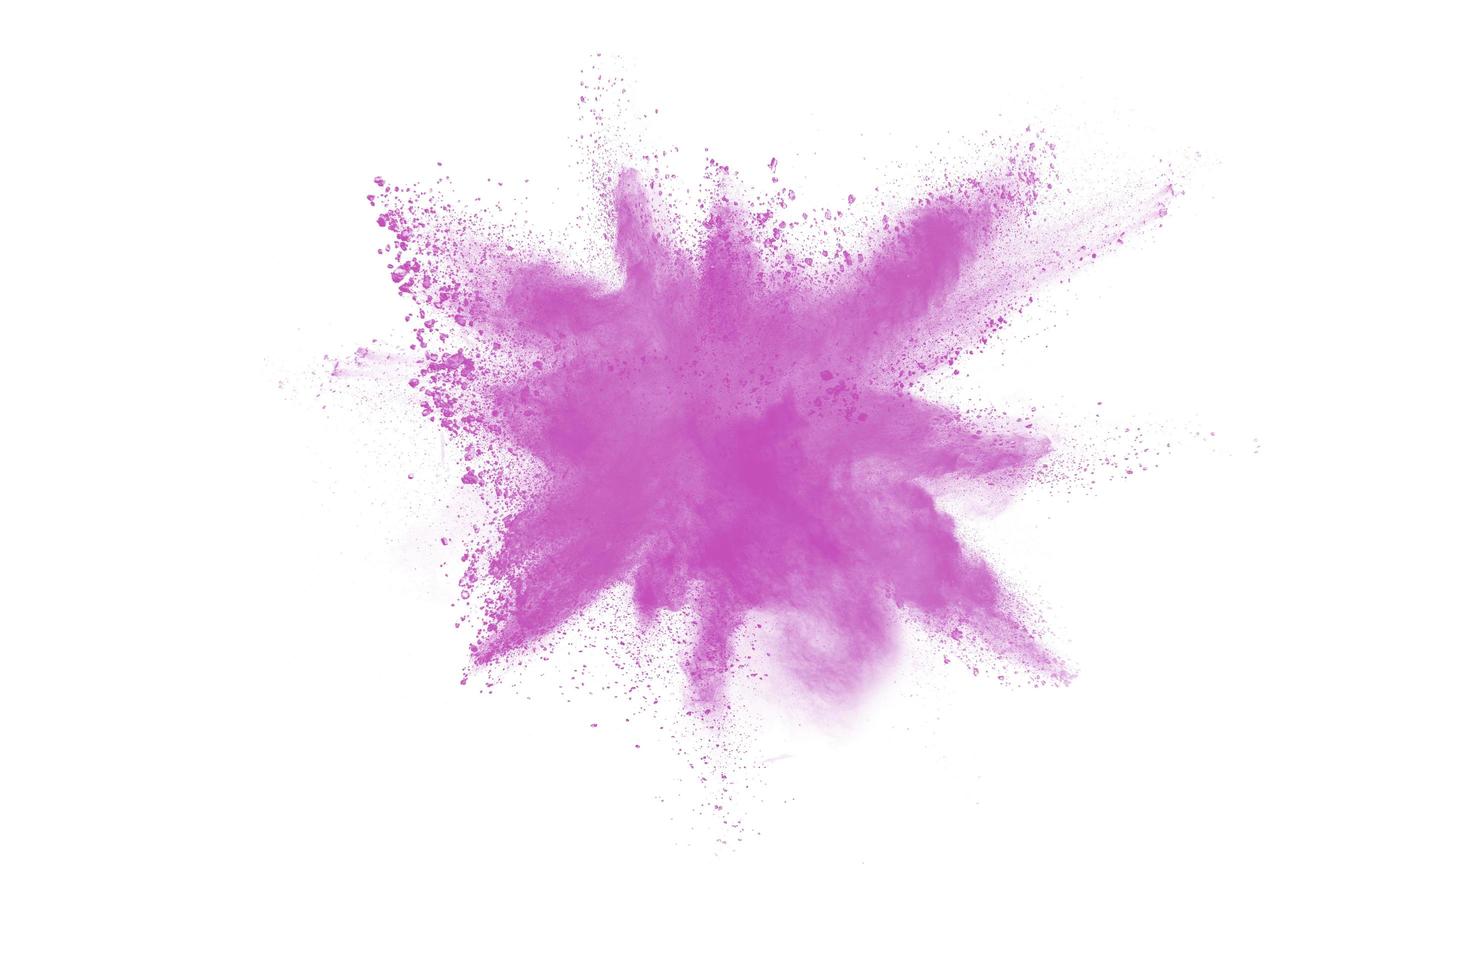 schizzi di polvere rosa su sfondo. esplosione di polvere rosa su sfondo bianco. foto